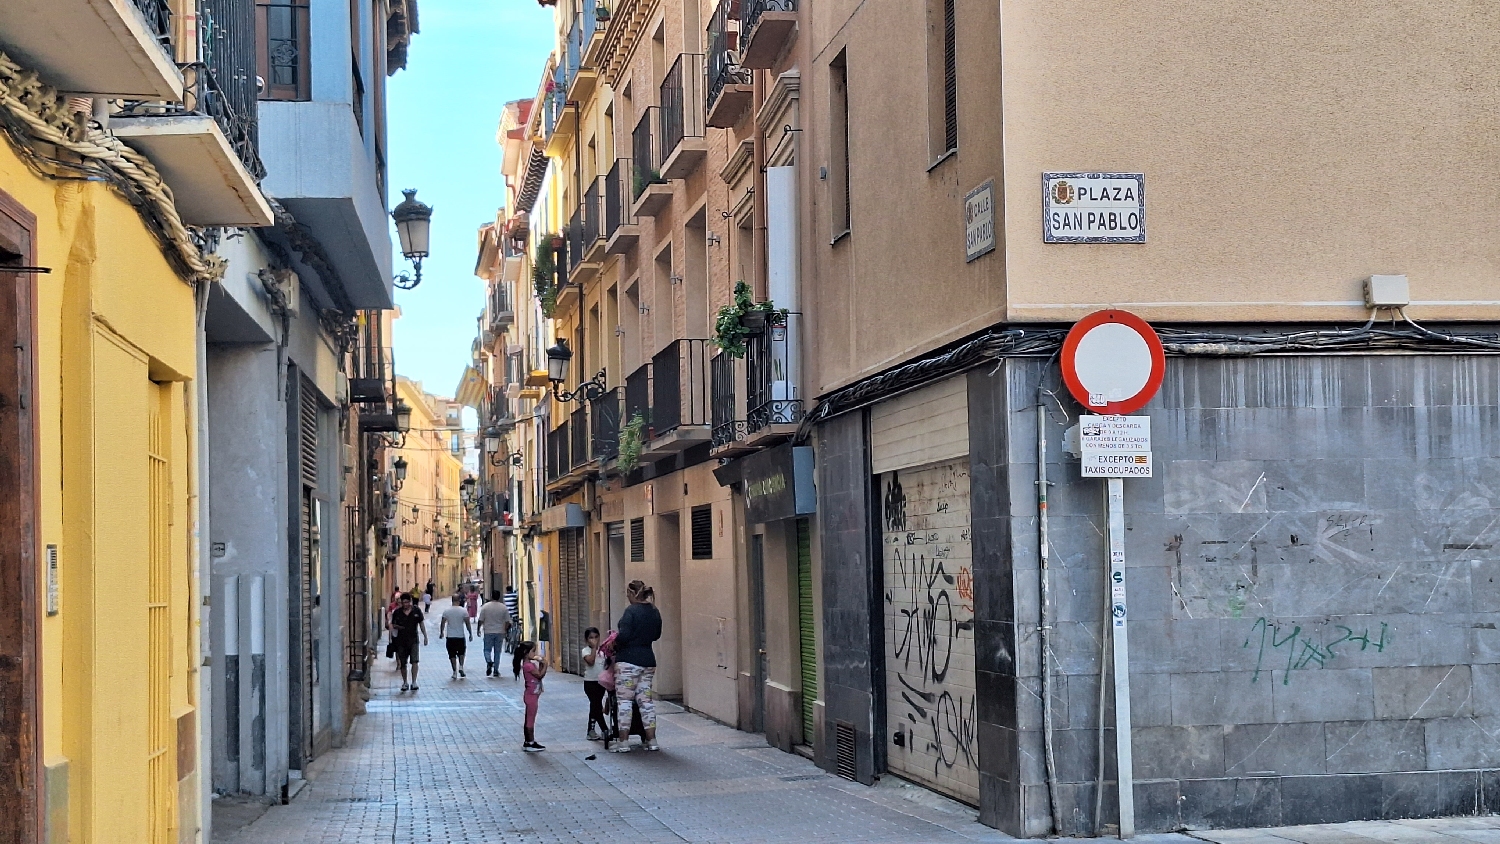 El Camino, Aragon út, Zaragoza, lepukkant mellékutca